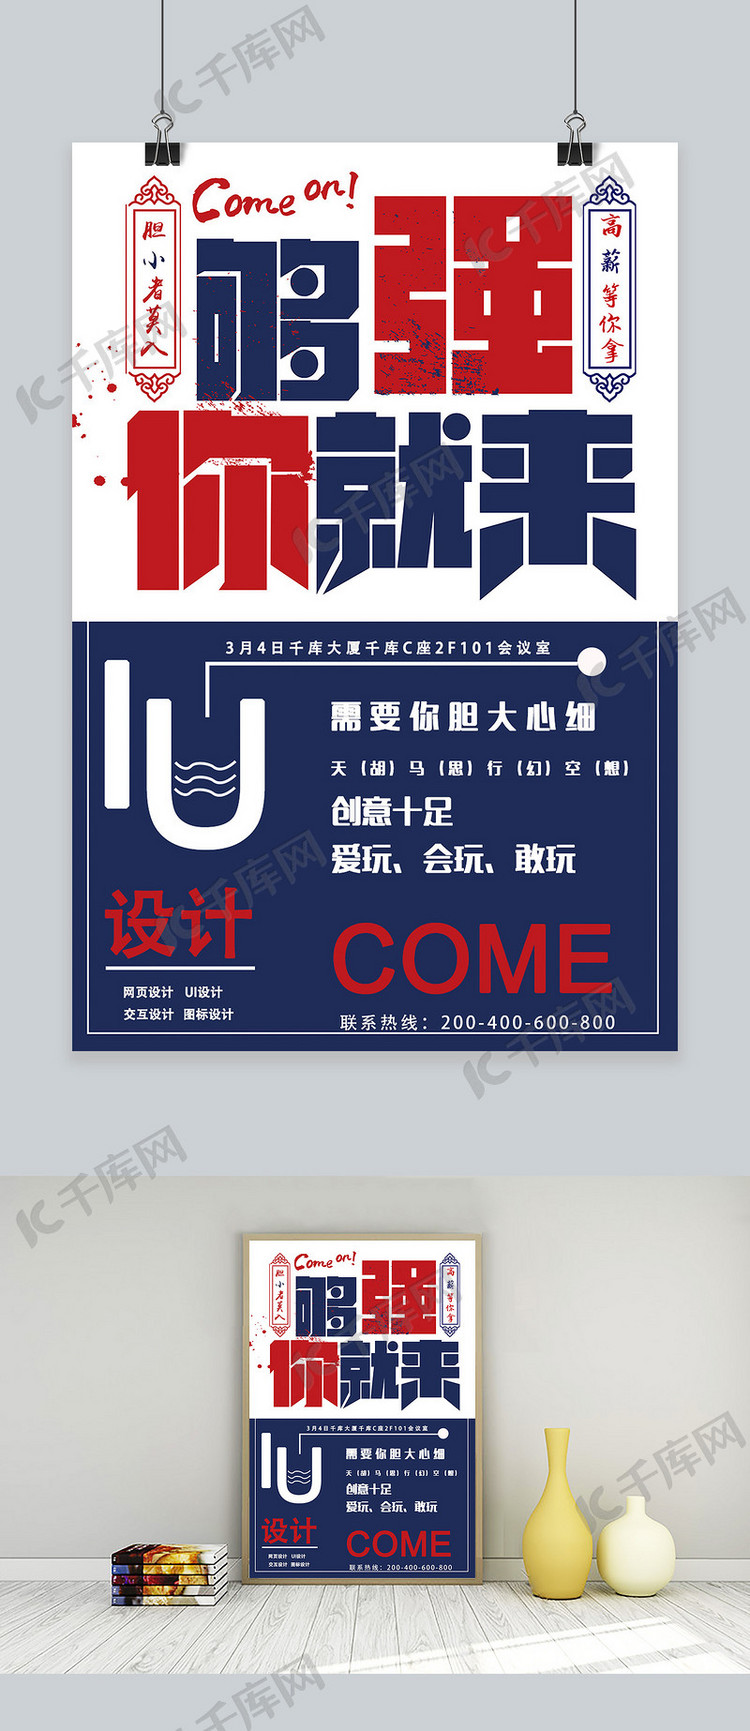 IU设计招聘图形宣传海报